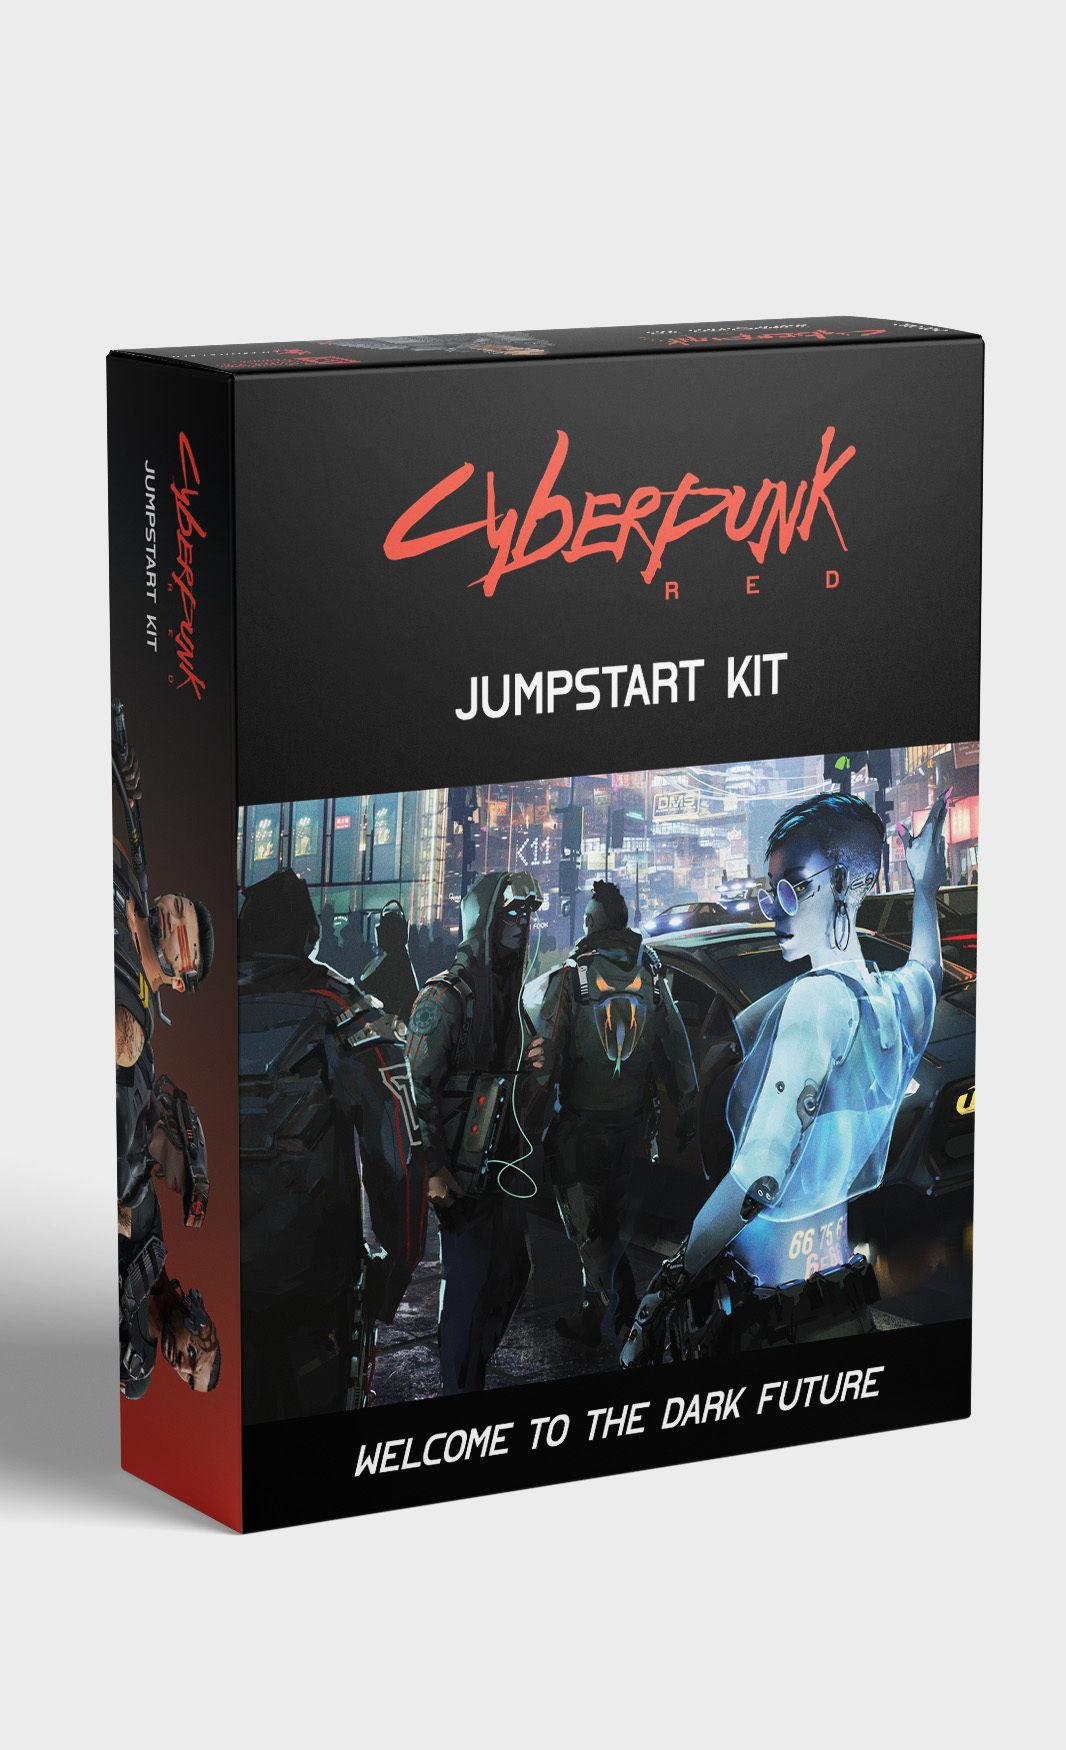 Cyberpunk 2077 tendrá una precuela con una nueva versión de Cyberpunk 2020